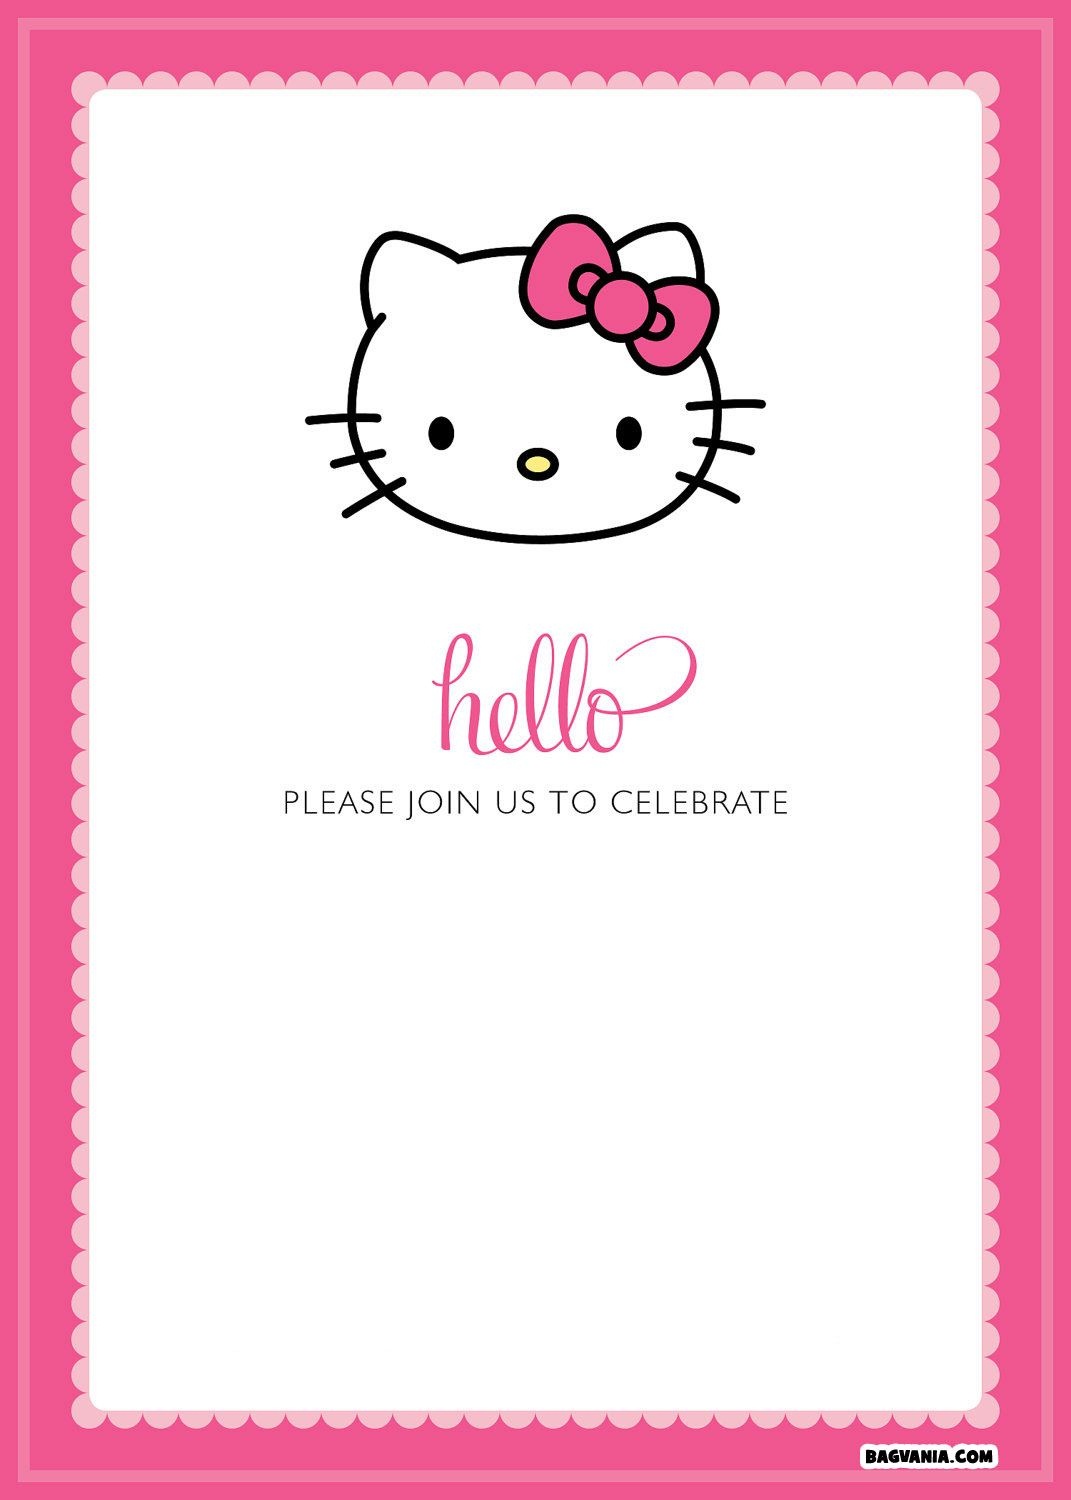 Free Printable Hello Kitty Birthday Invitations – Bagvania Free - Free Printable Kitten Birthday Invitations